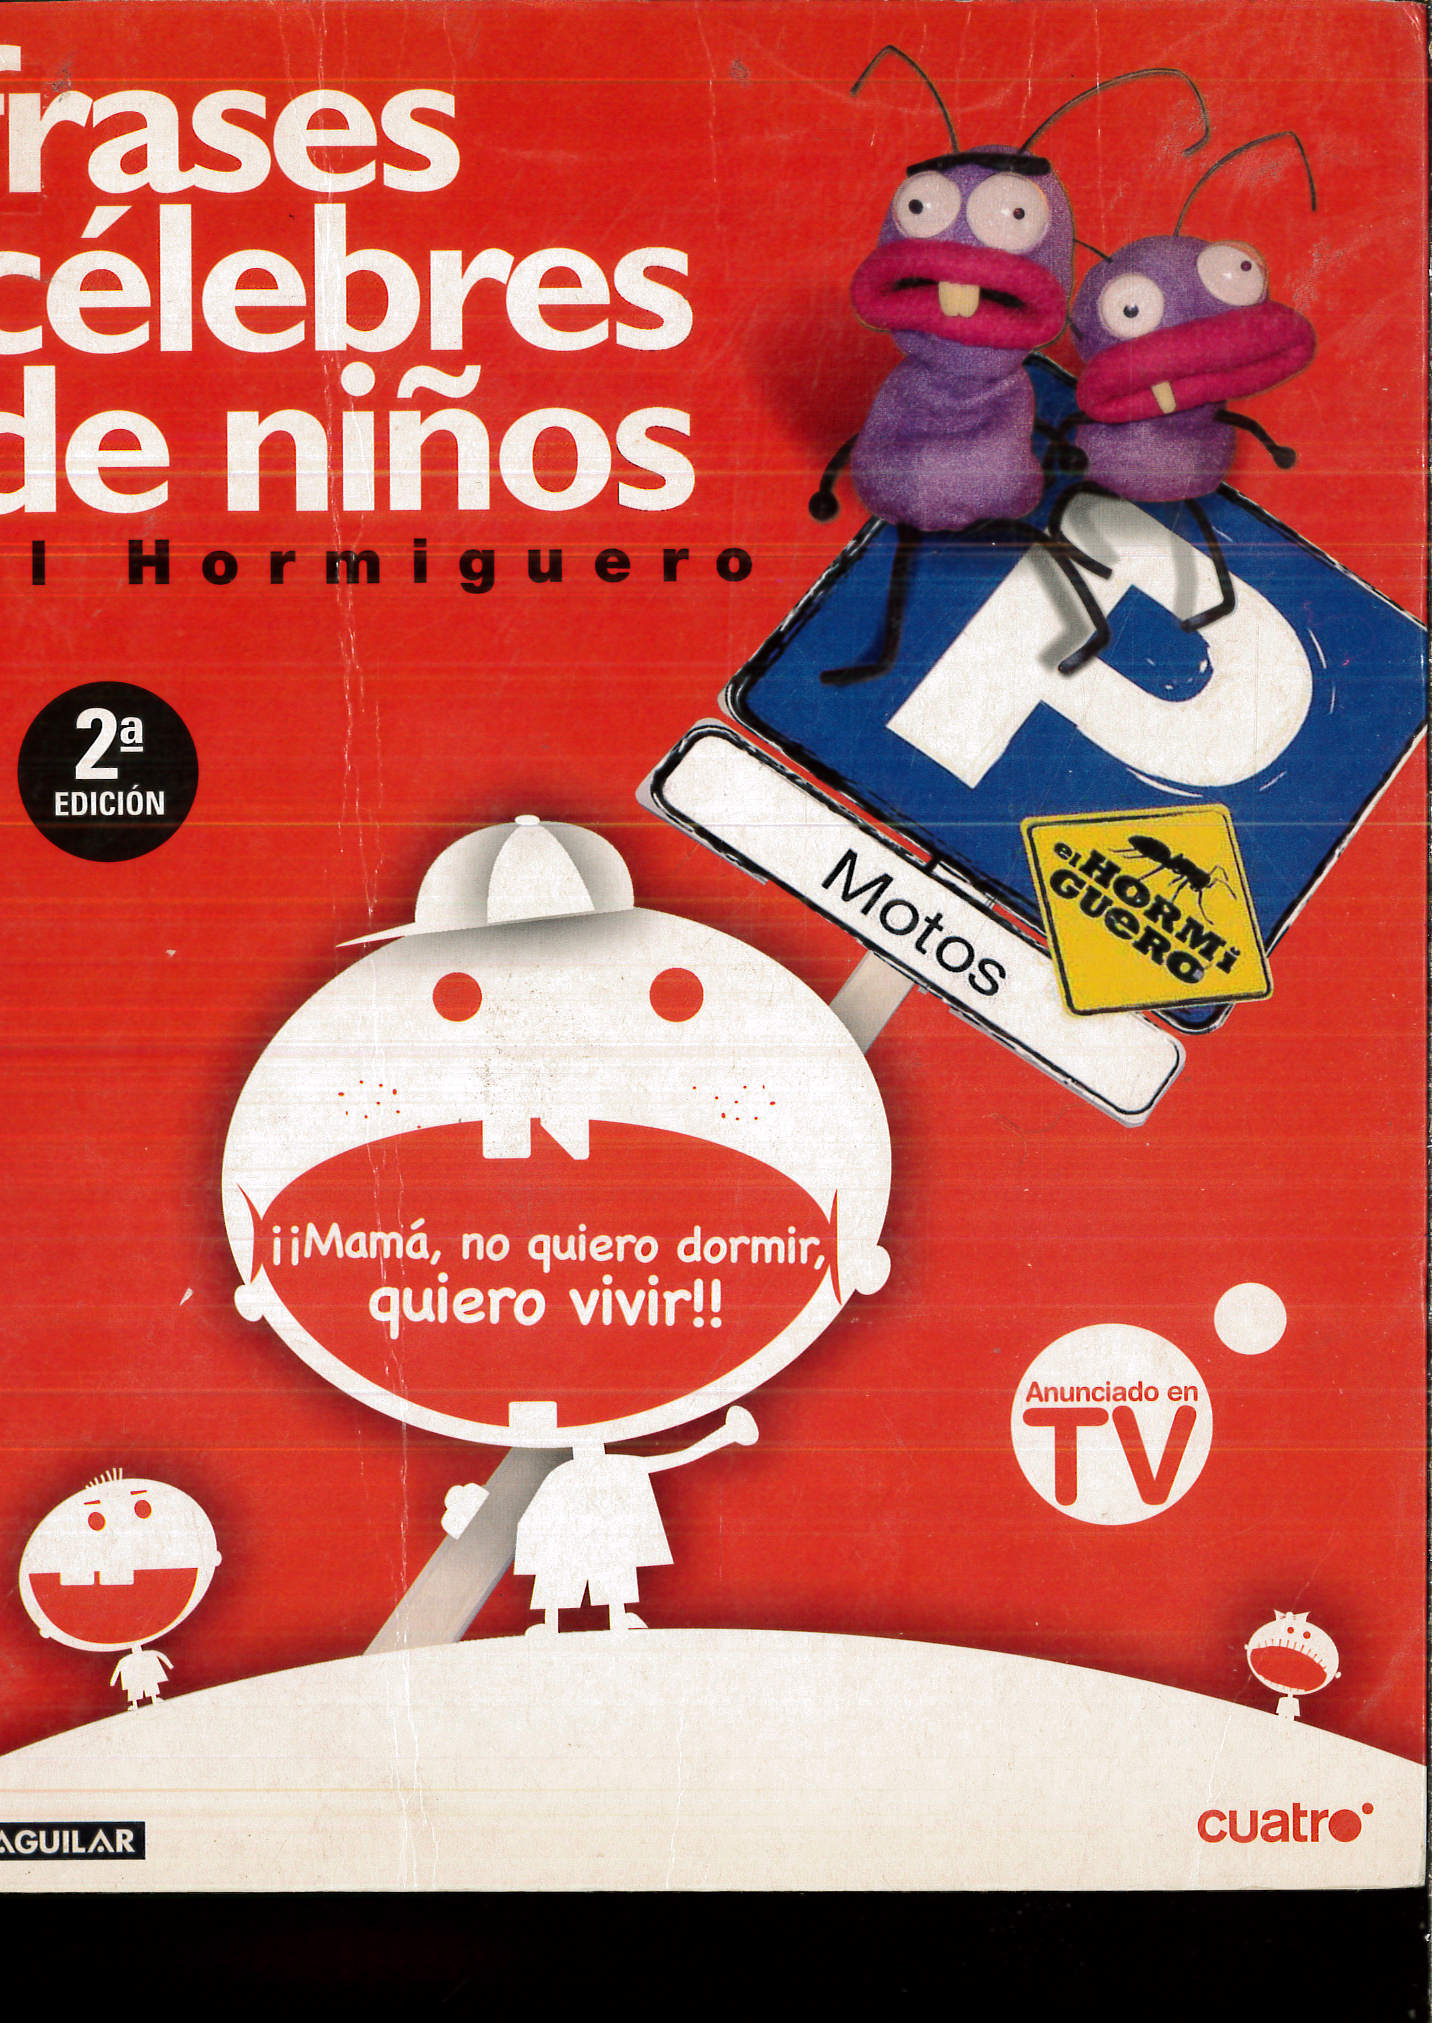 Frases célebres de niños (OTROS GENERALES AGUILAR.) (Spanish Edition) - MOTOS, PABLO